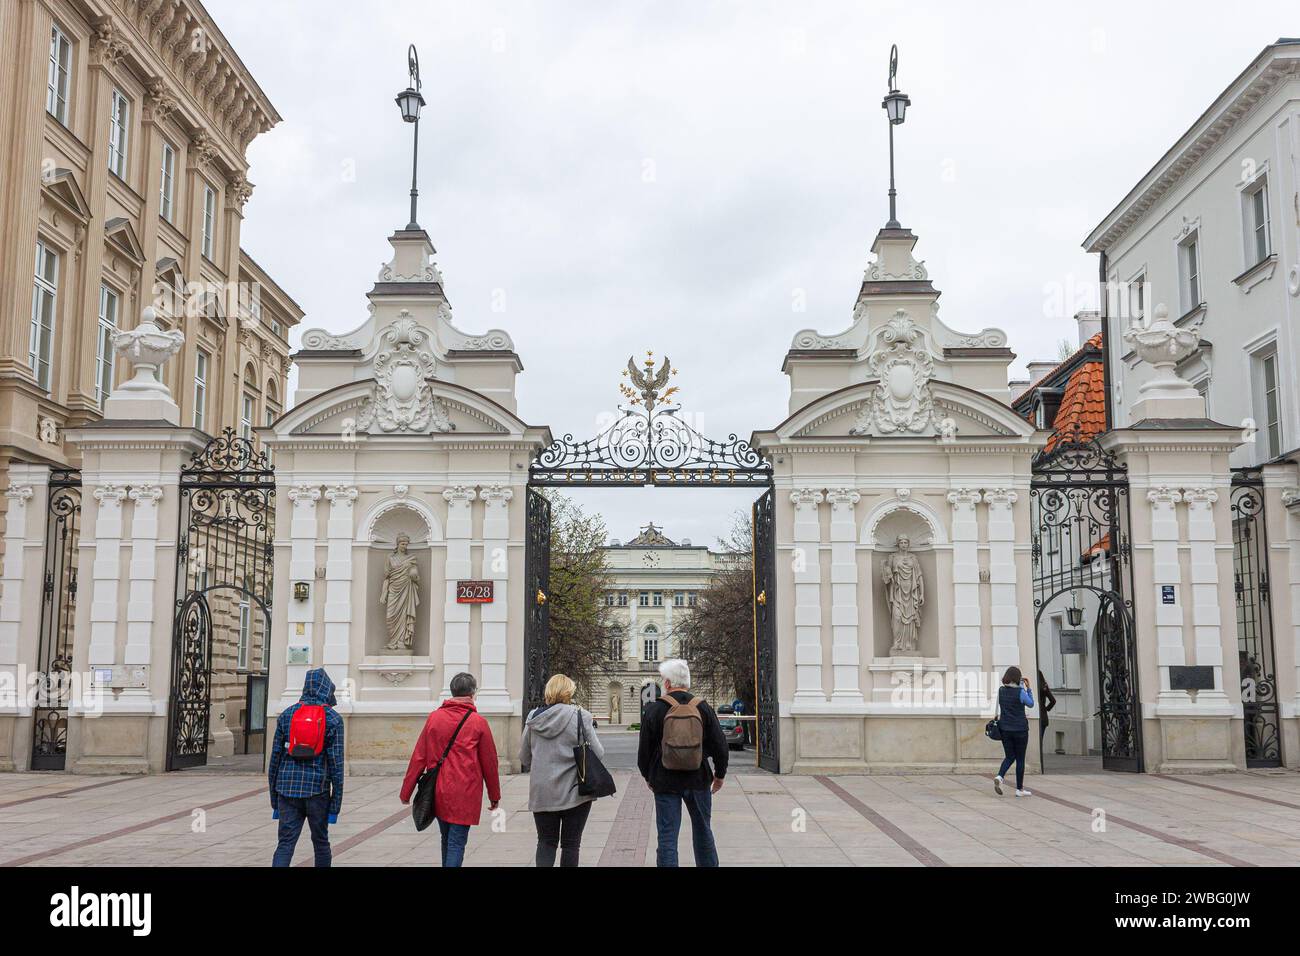 Warsaw, Poland. Entrance gate to the main campus of the Uniwersytet Warszawski (University of Warsaw) Stock Photo